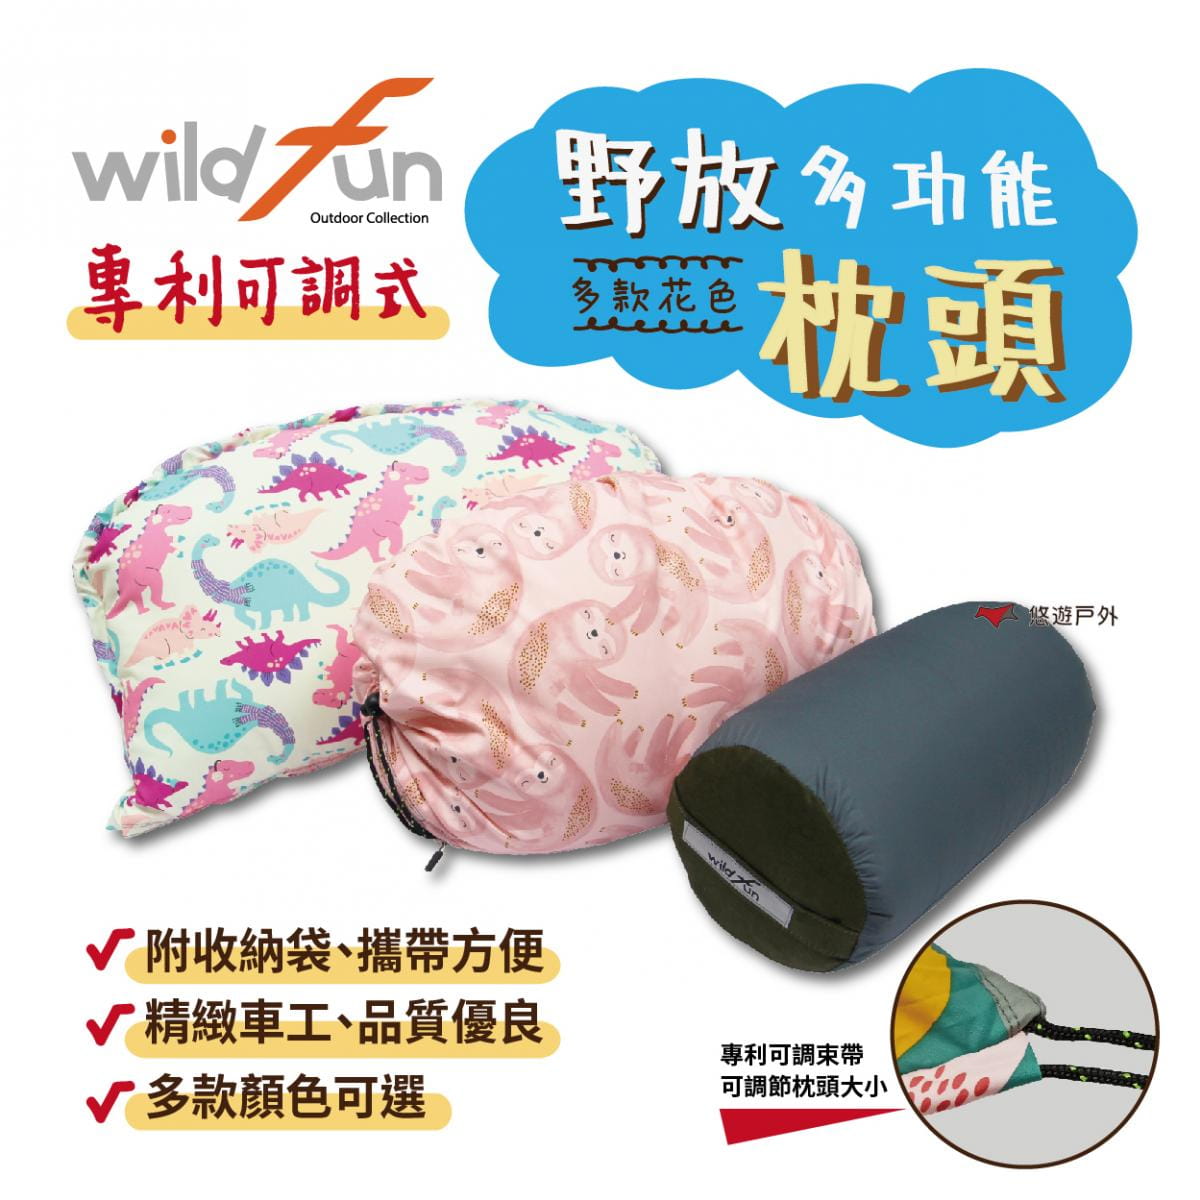 【wildfun野放】專利可調式功能枕頭_豹紋系列 (悠遊戶外) 0